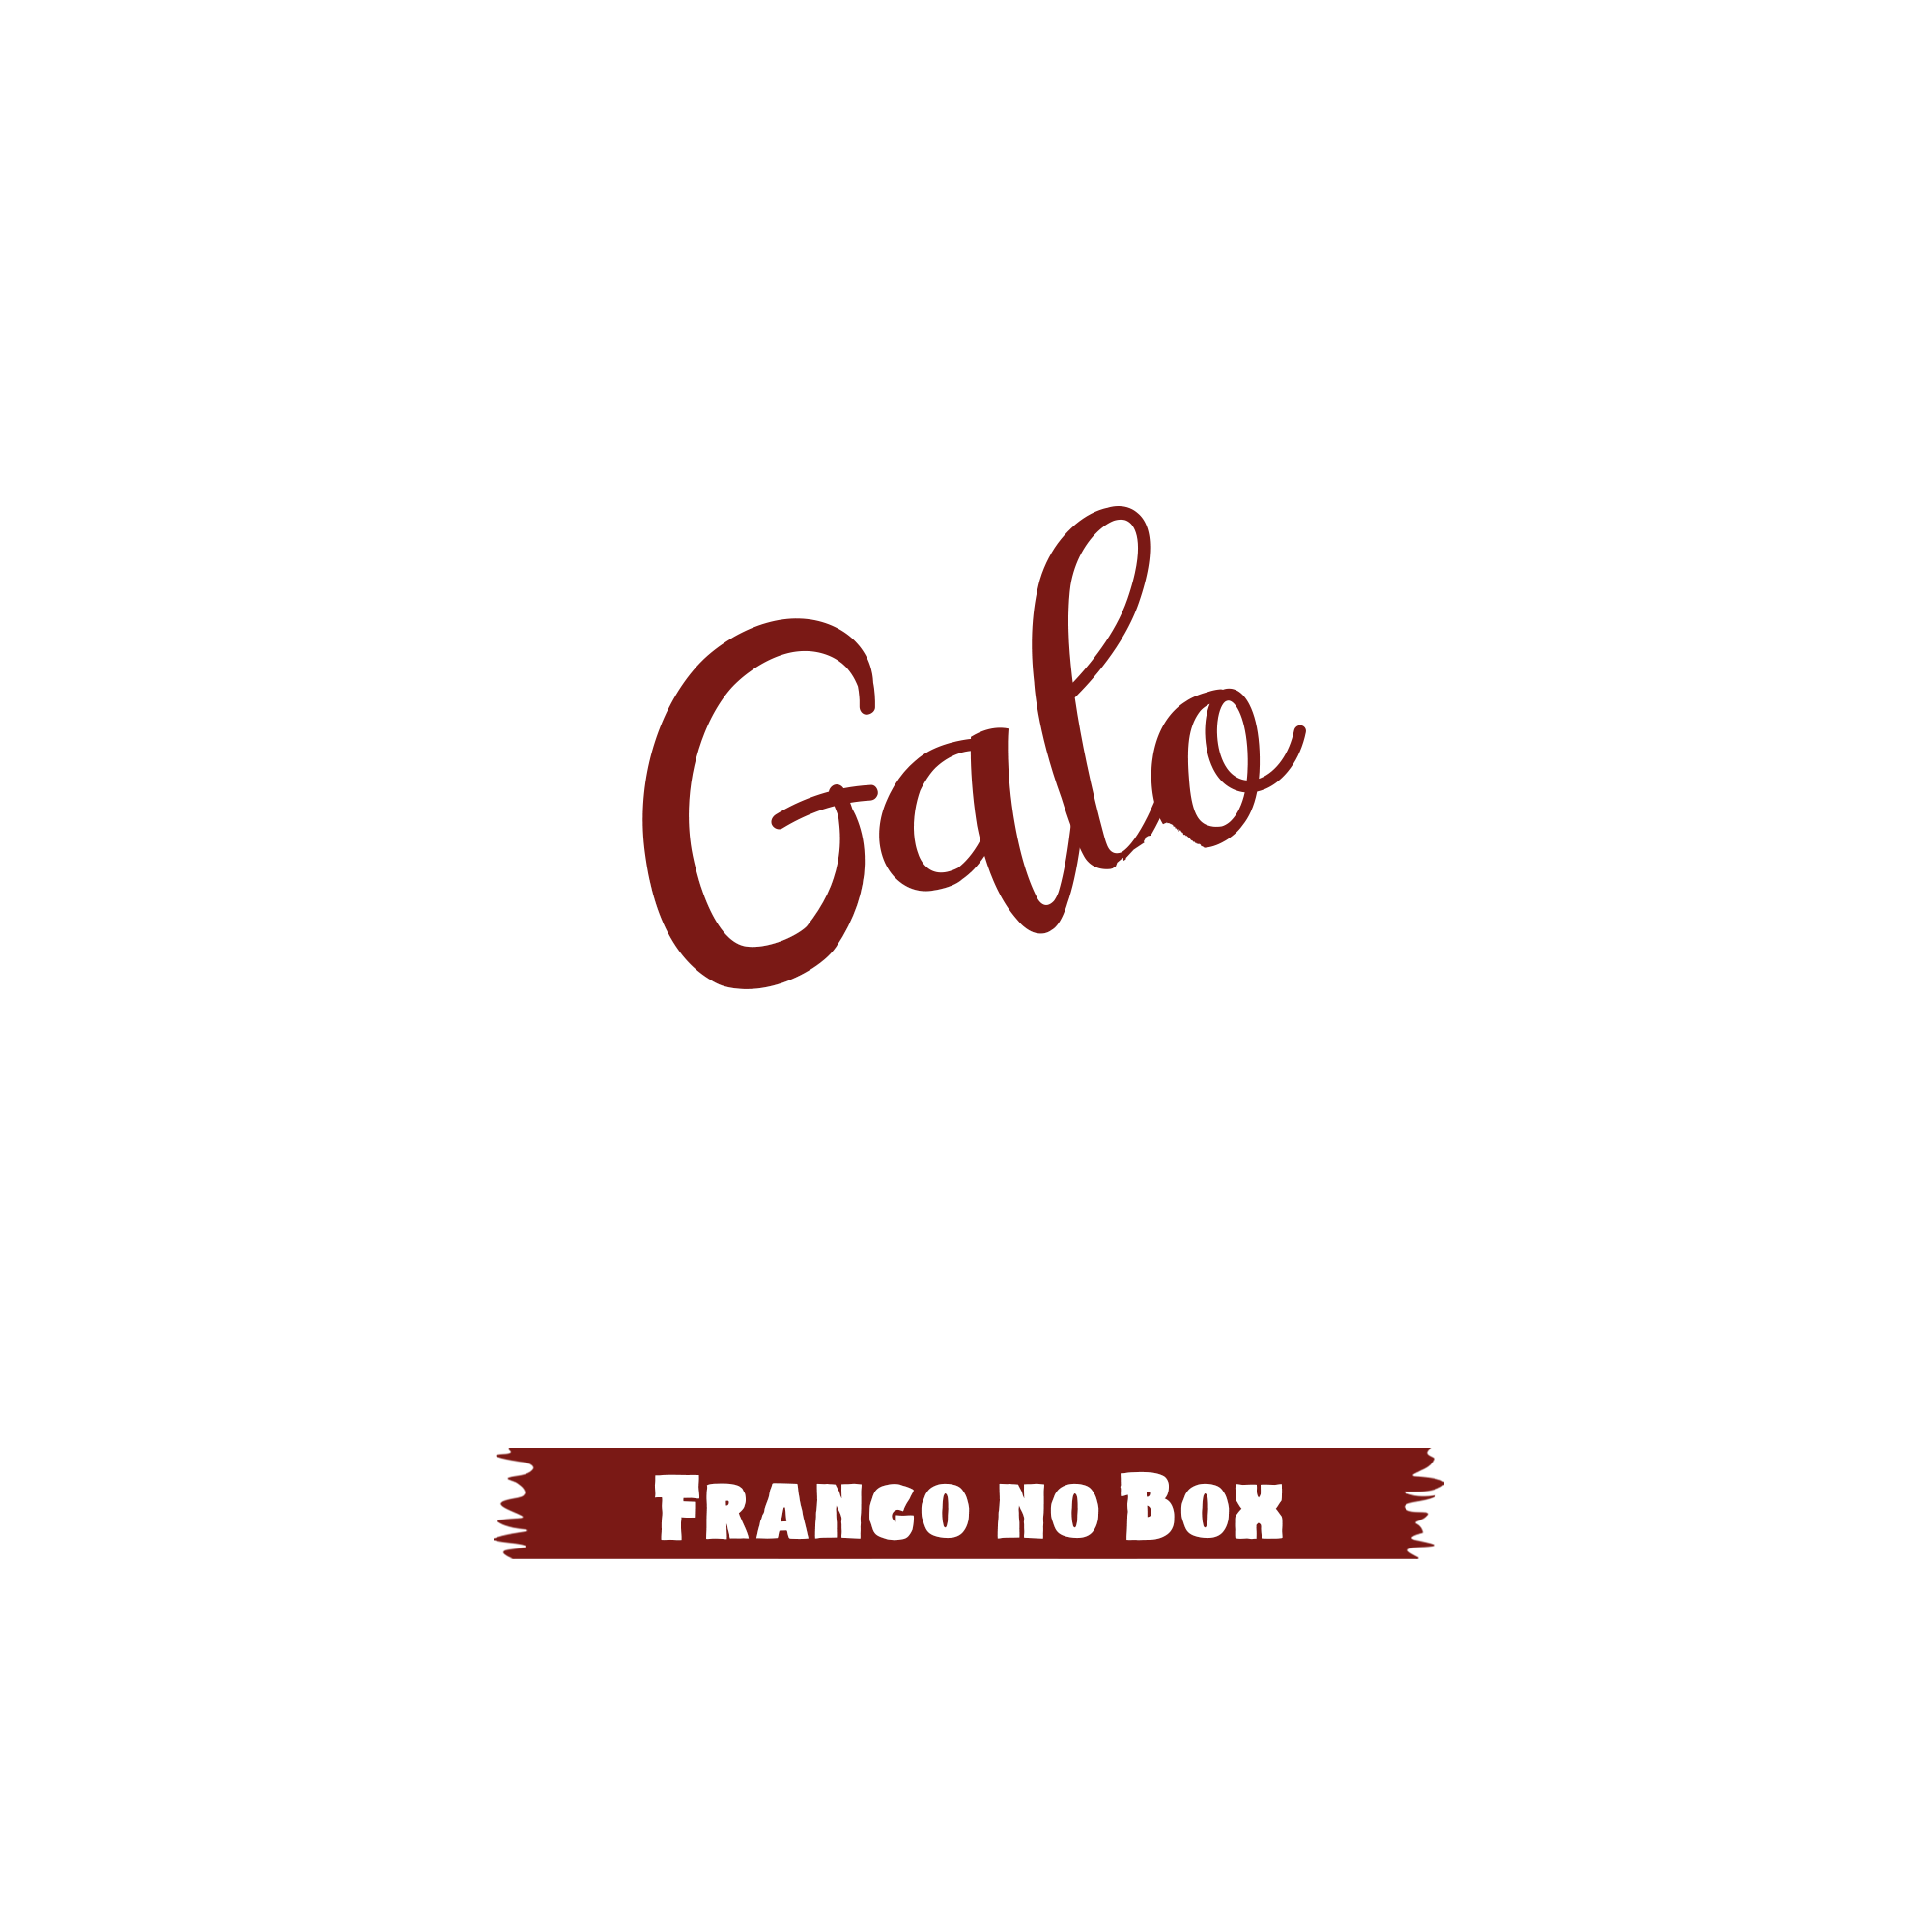 Logo franquia Galo Zé